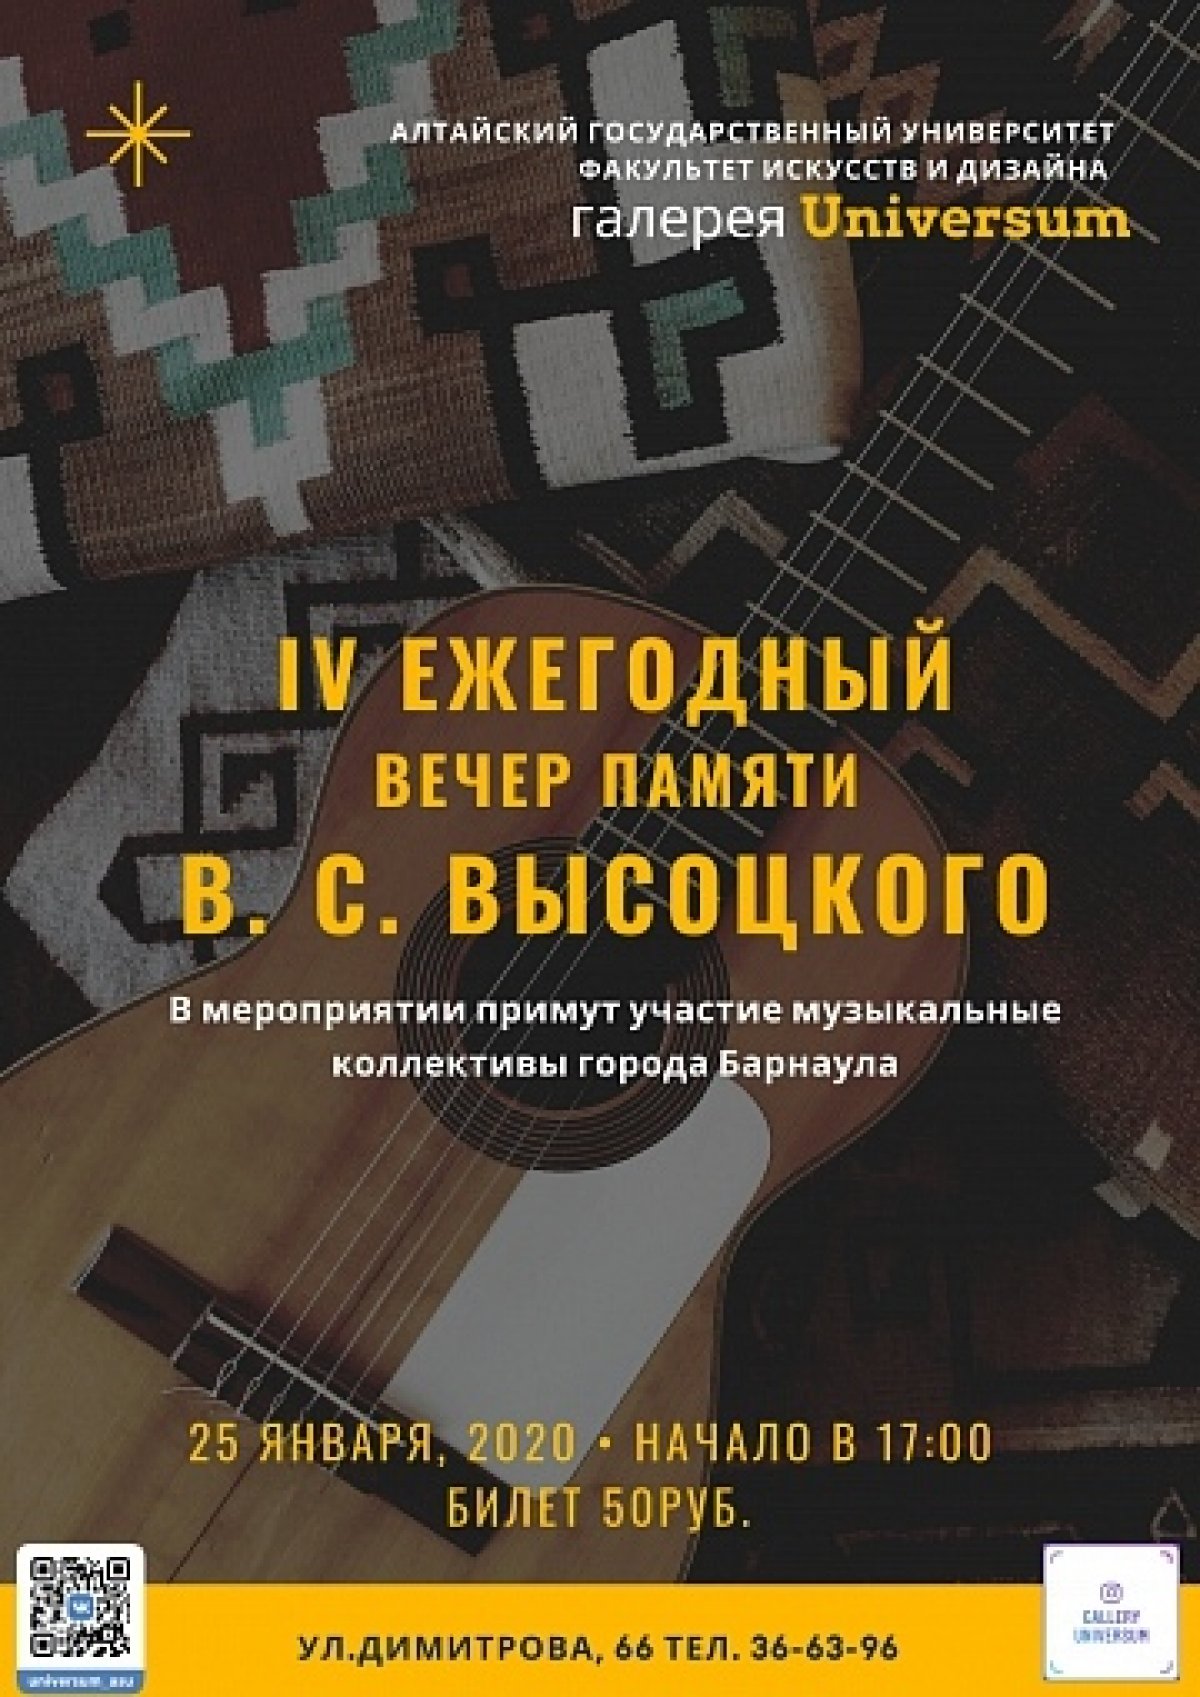 🎶Мелодичность гитары и сильные, рокочущие строки – 25 января вспоминаем творчество Владимира Высоцкого вместе с музыкальными коллективами нашего города.